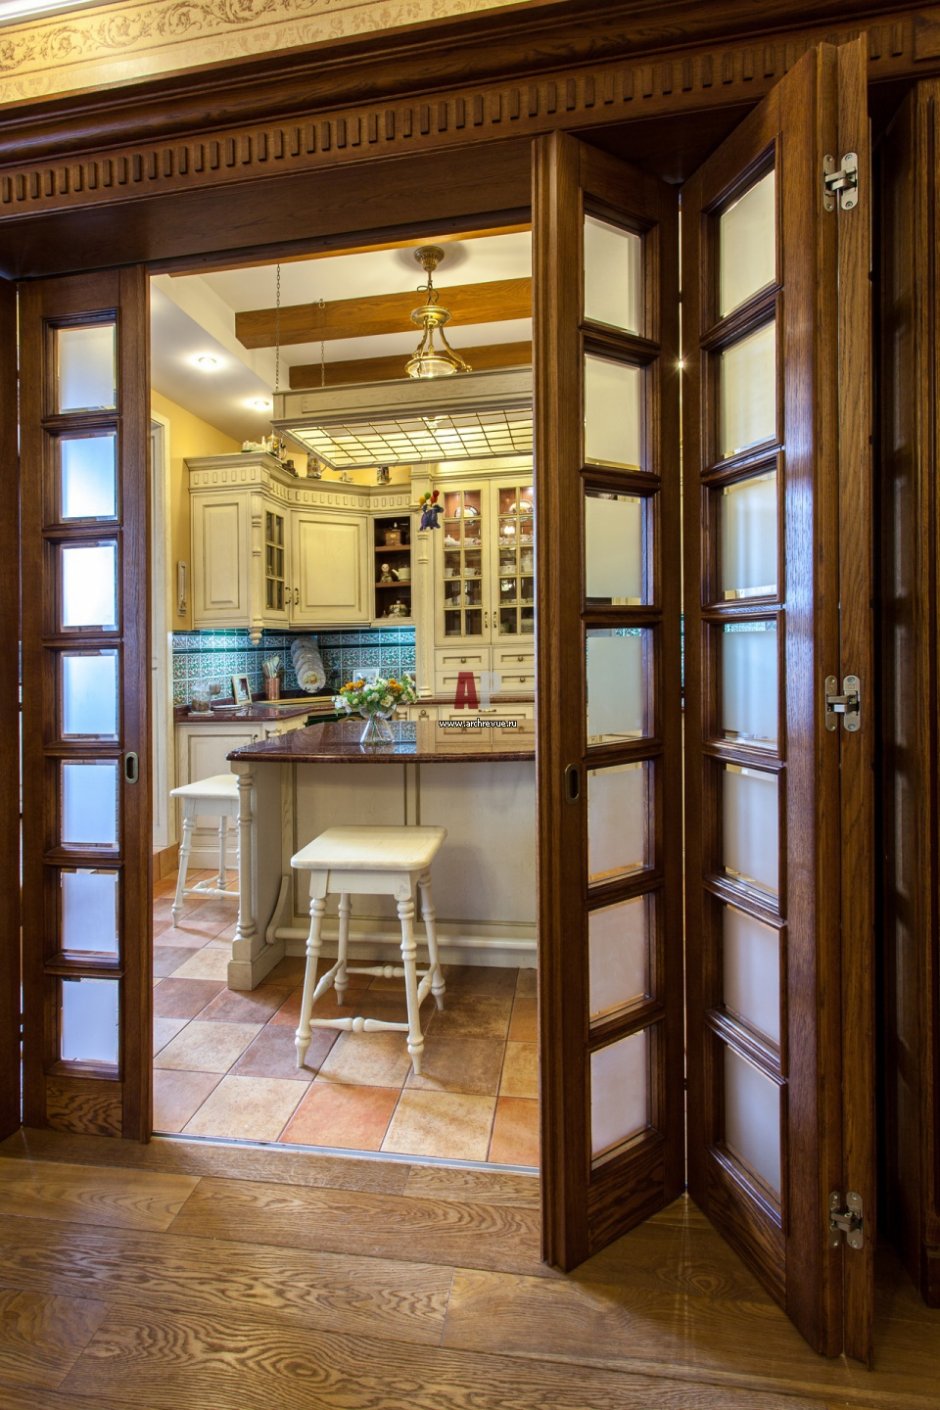 Раздвижные двери между кухней и гостиной